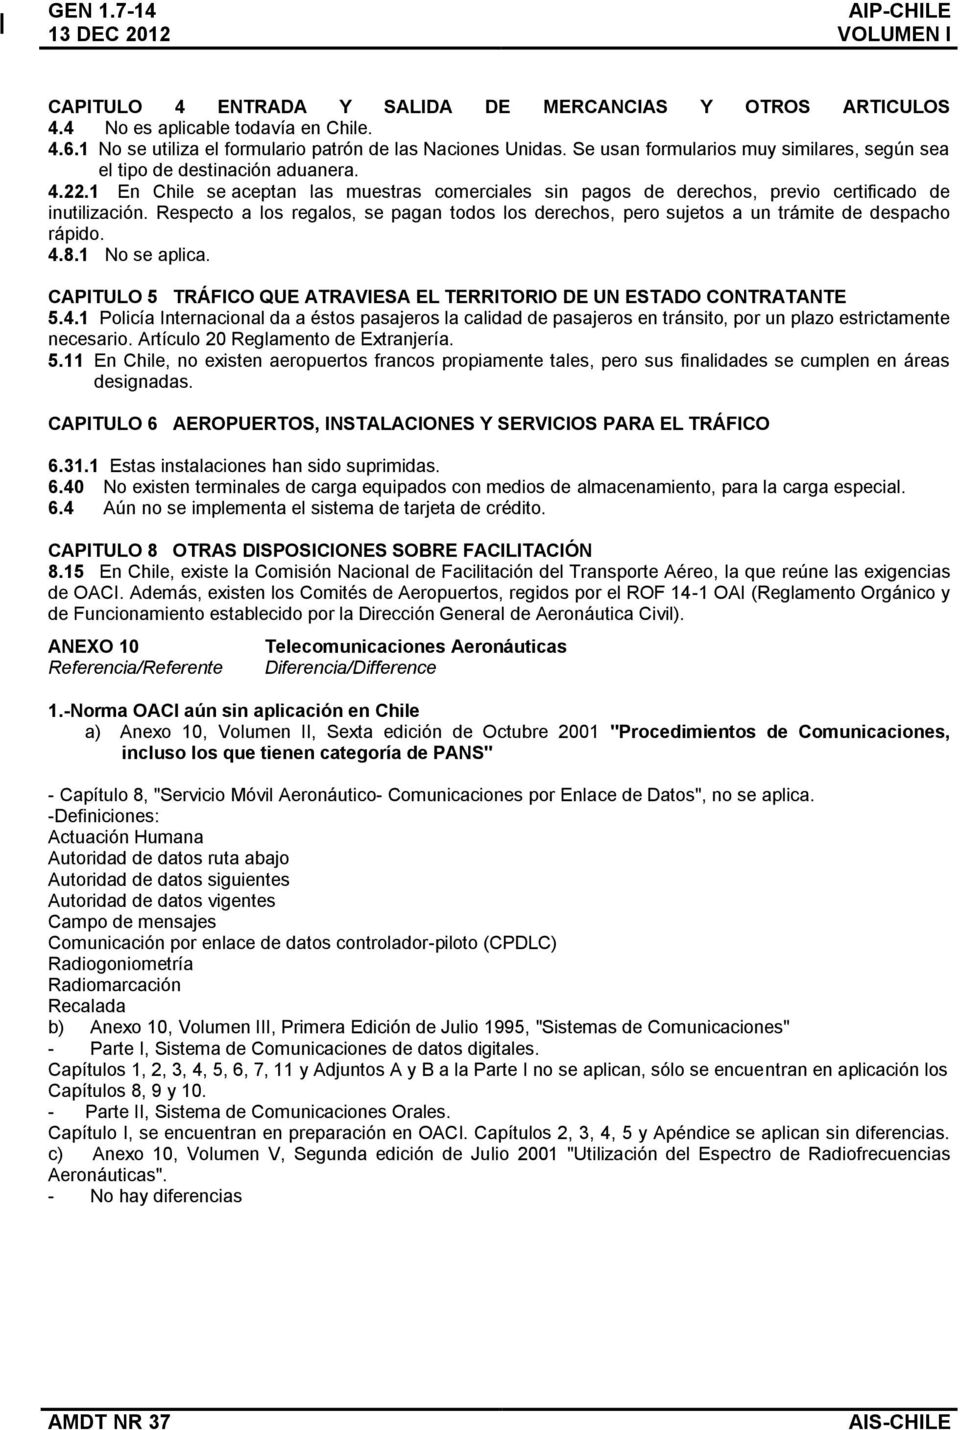 1 En Chile se aceptan las muestras comerciales sin pagos de derechos, previo certificado de inutilización.